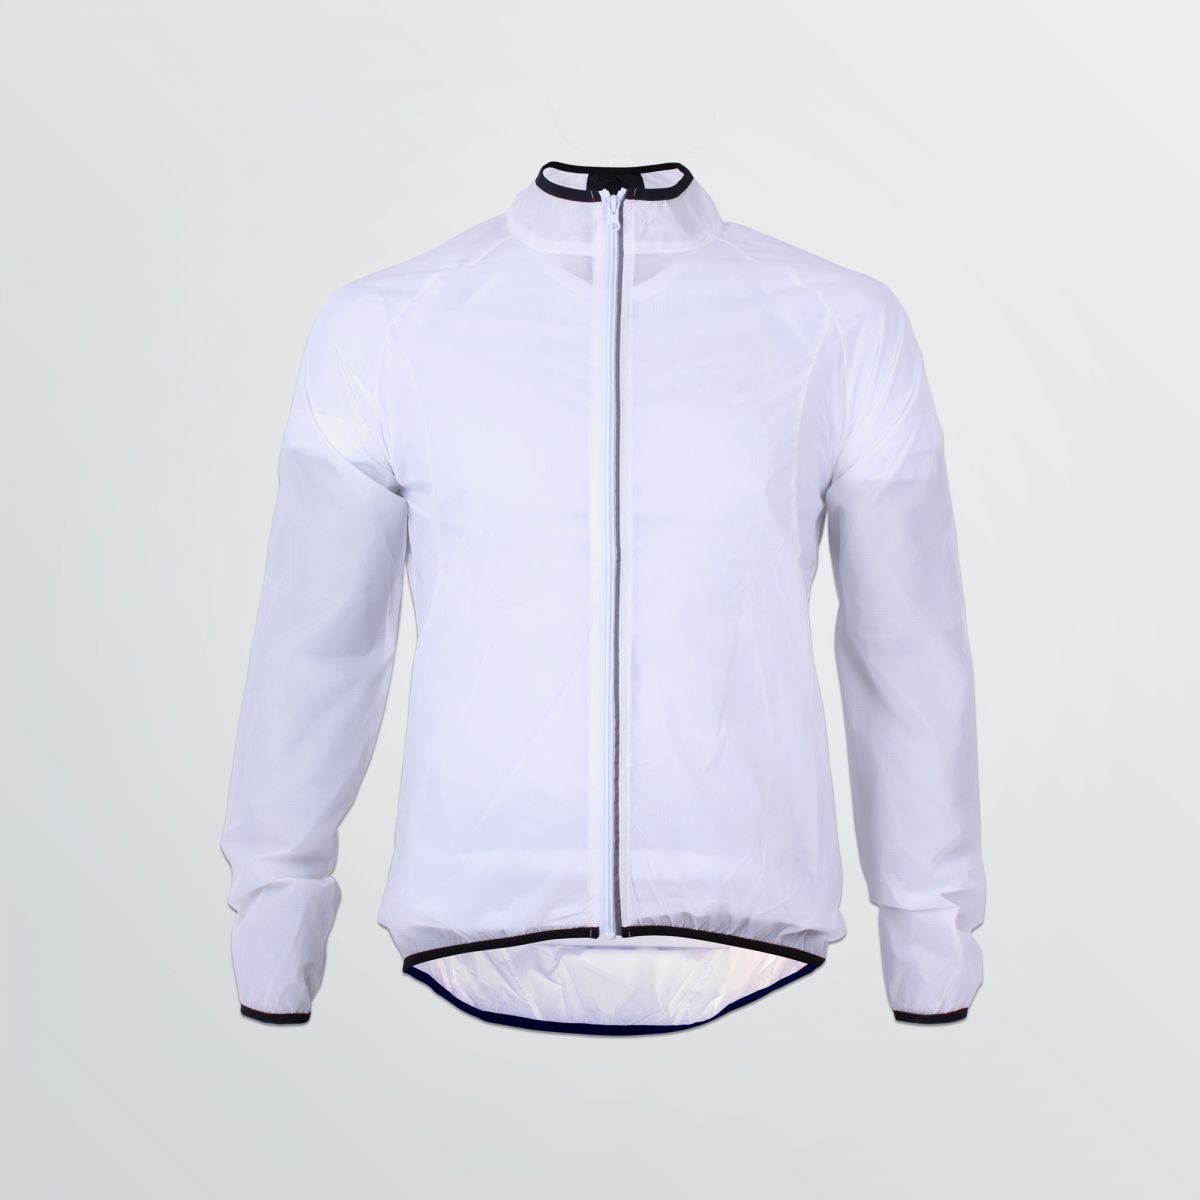 Windabweisende Basic Wind Jacket zum Individualisieren in weißer Beispielfarbe mit schwarz abgesetzten Bündchen - Frontansicht